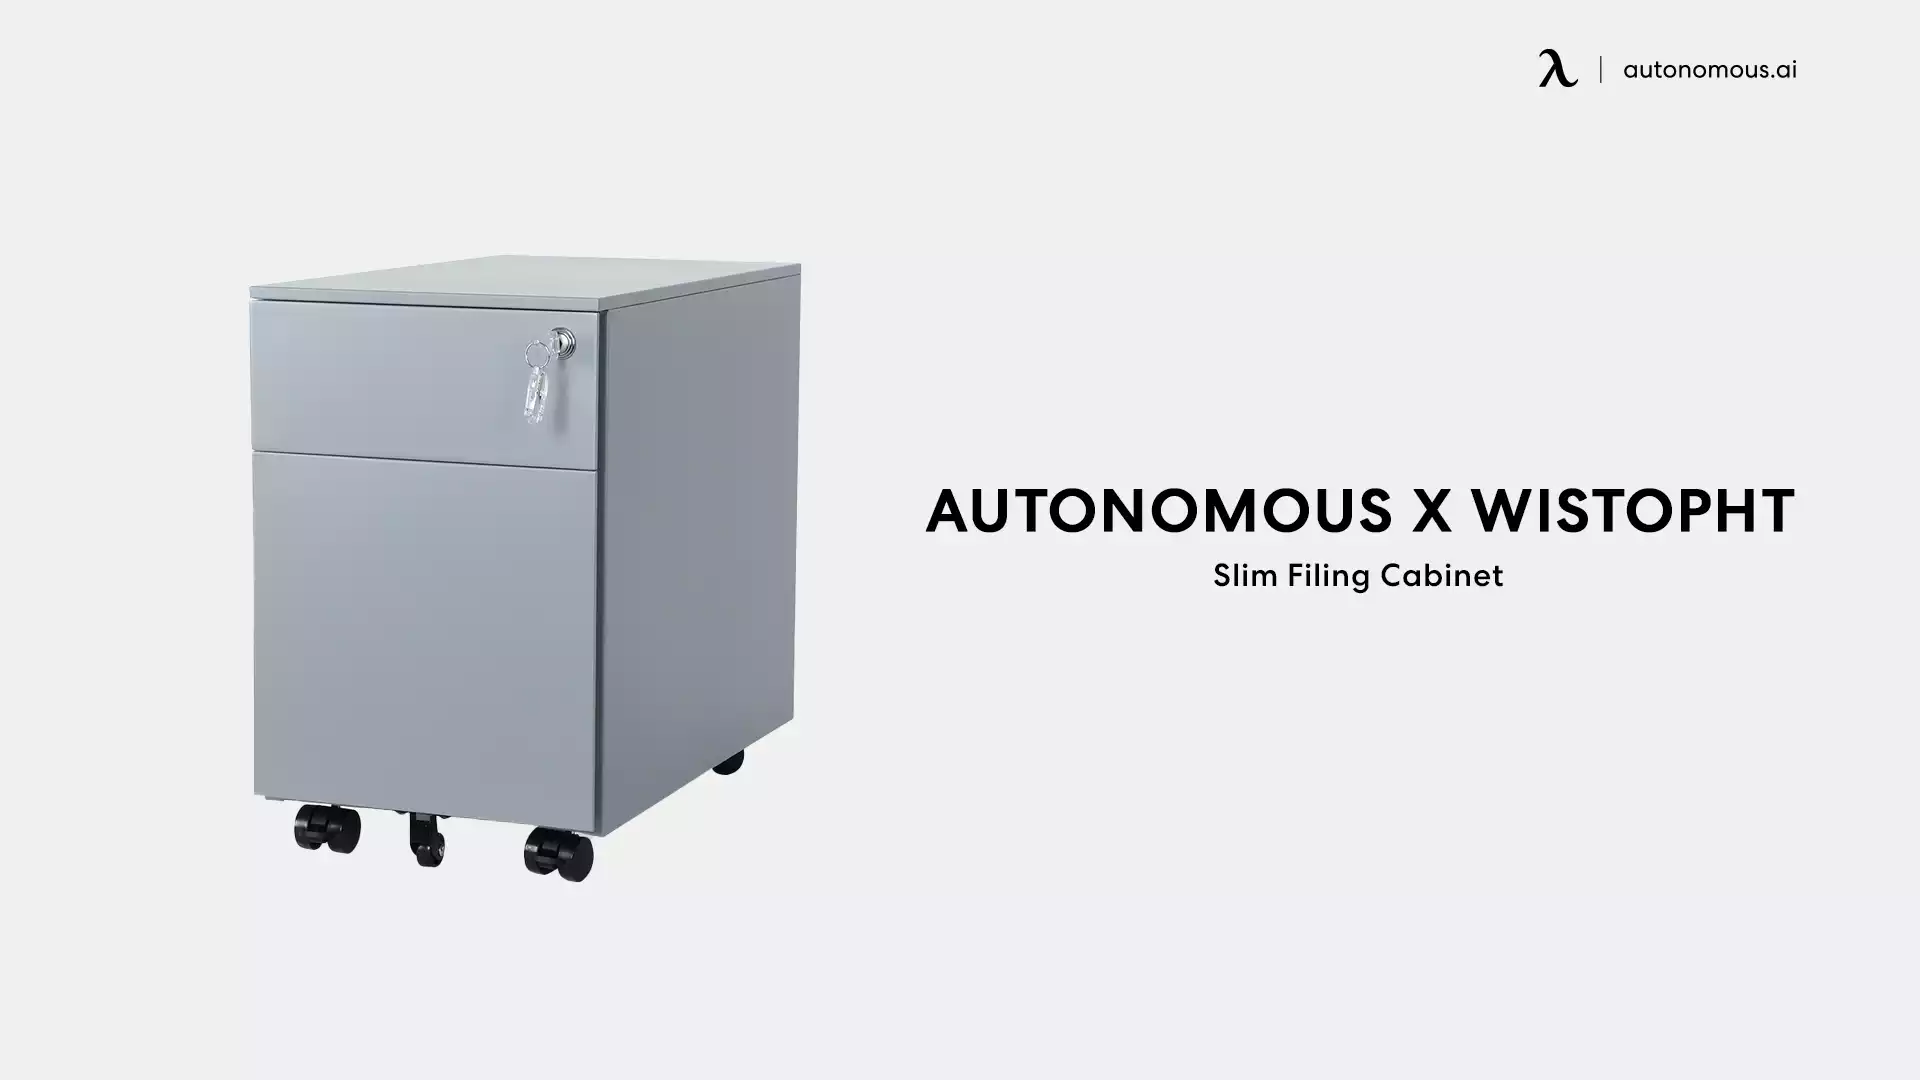 Slim Filing Cabinet by Autonomous x Wistopht